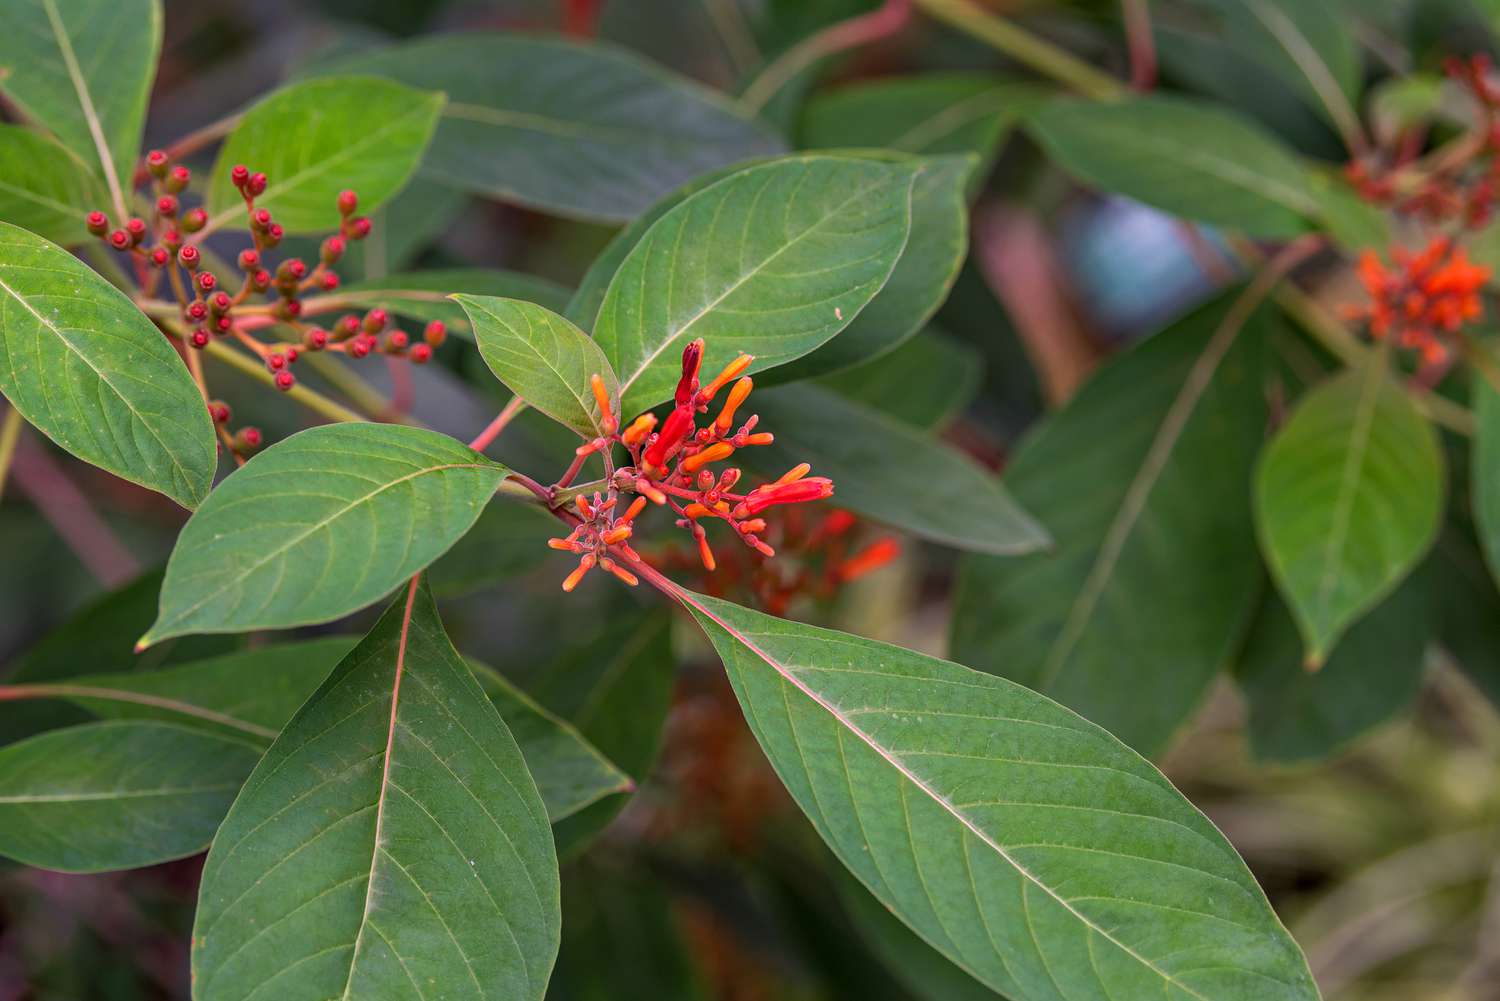 Branche d'arbuste d'épilobe à fleurs tubulaires rouge-orange entourées de grandes feuilles vertes